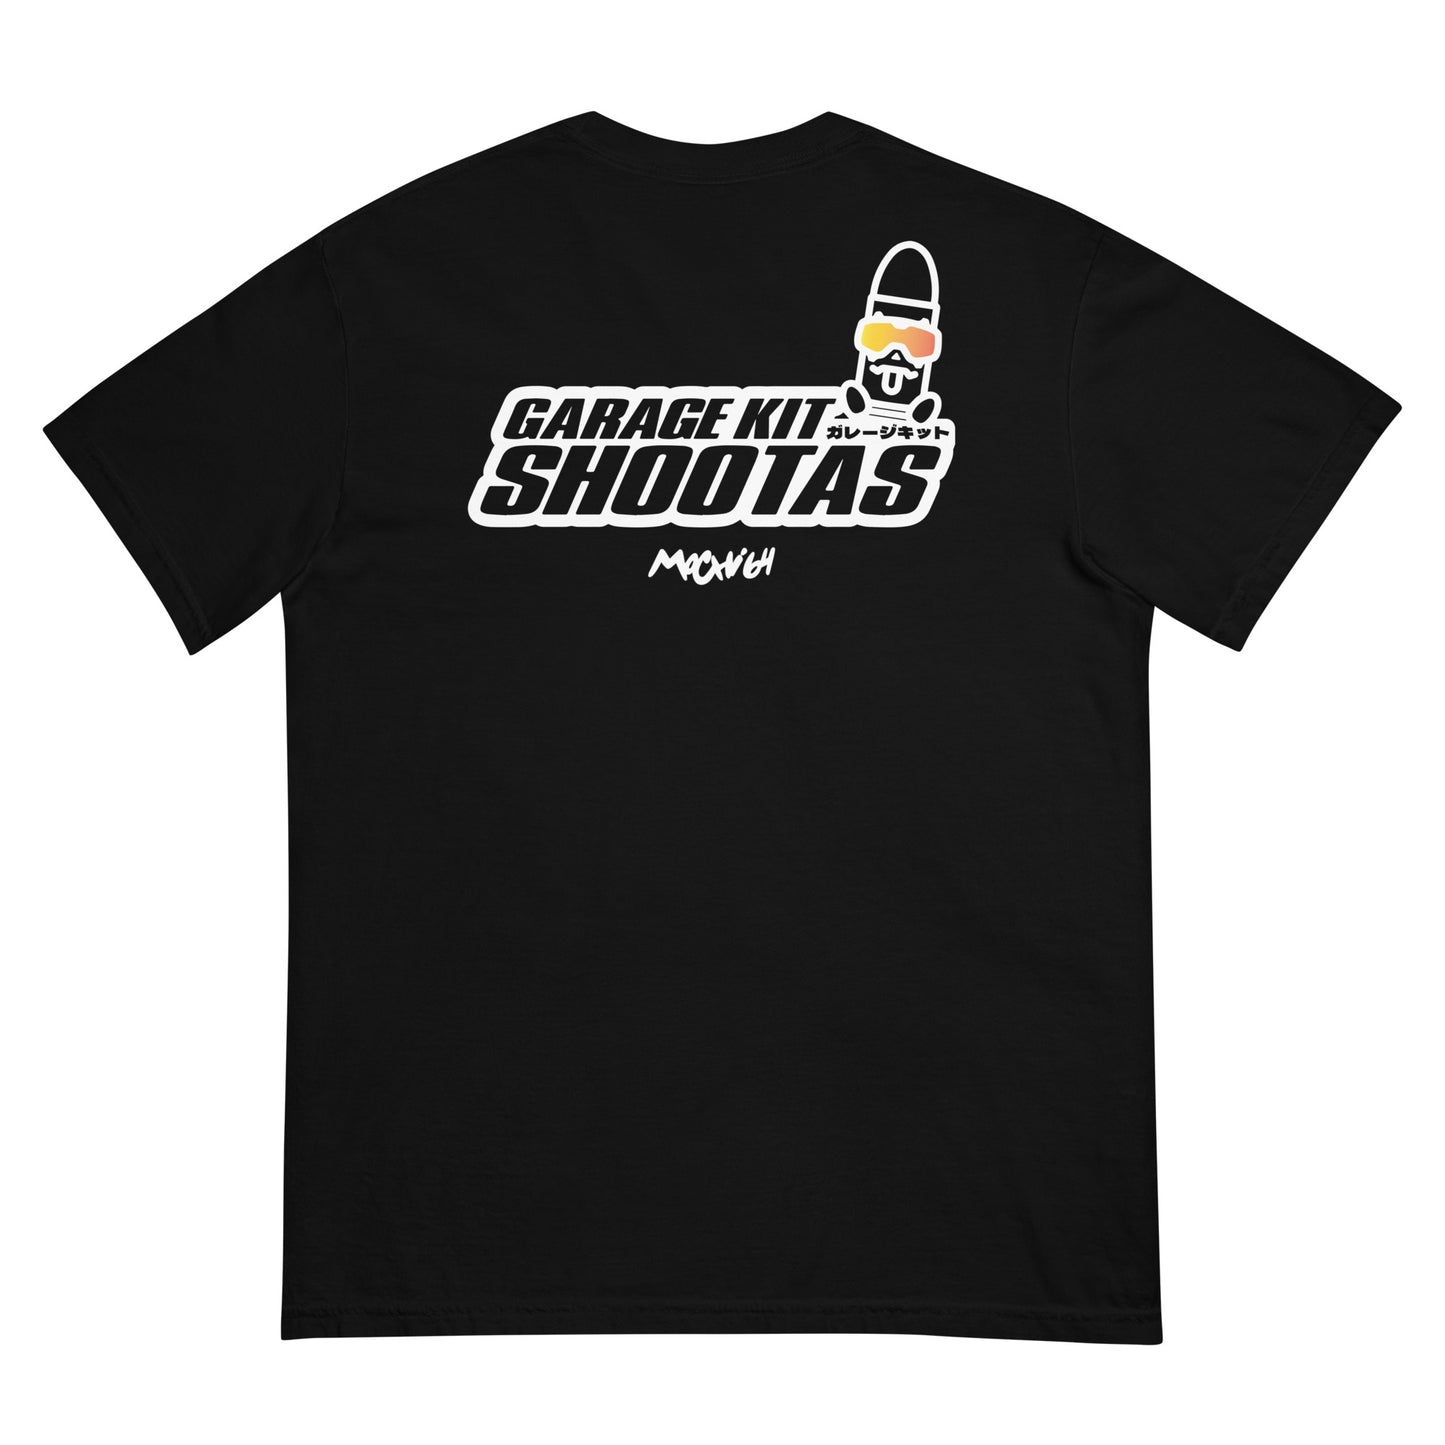 Garage kit shootas logo